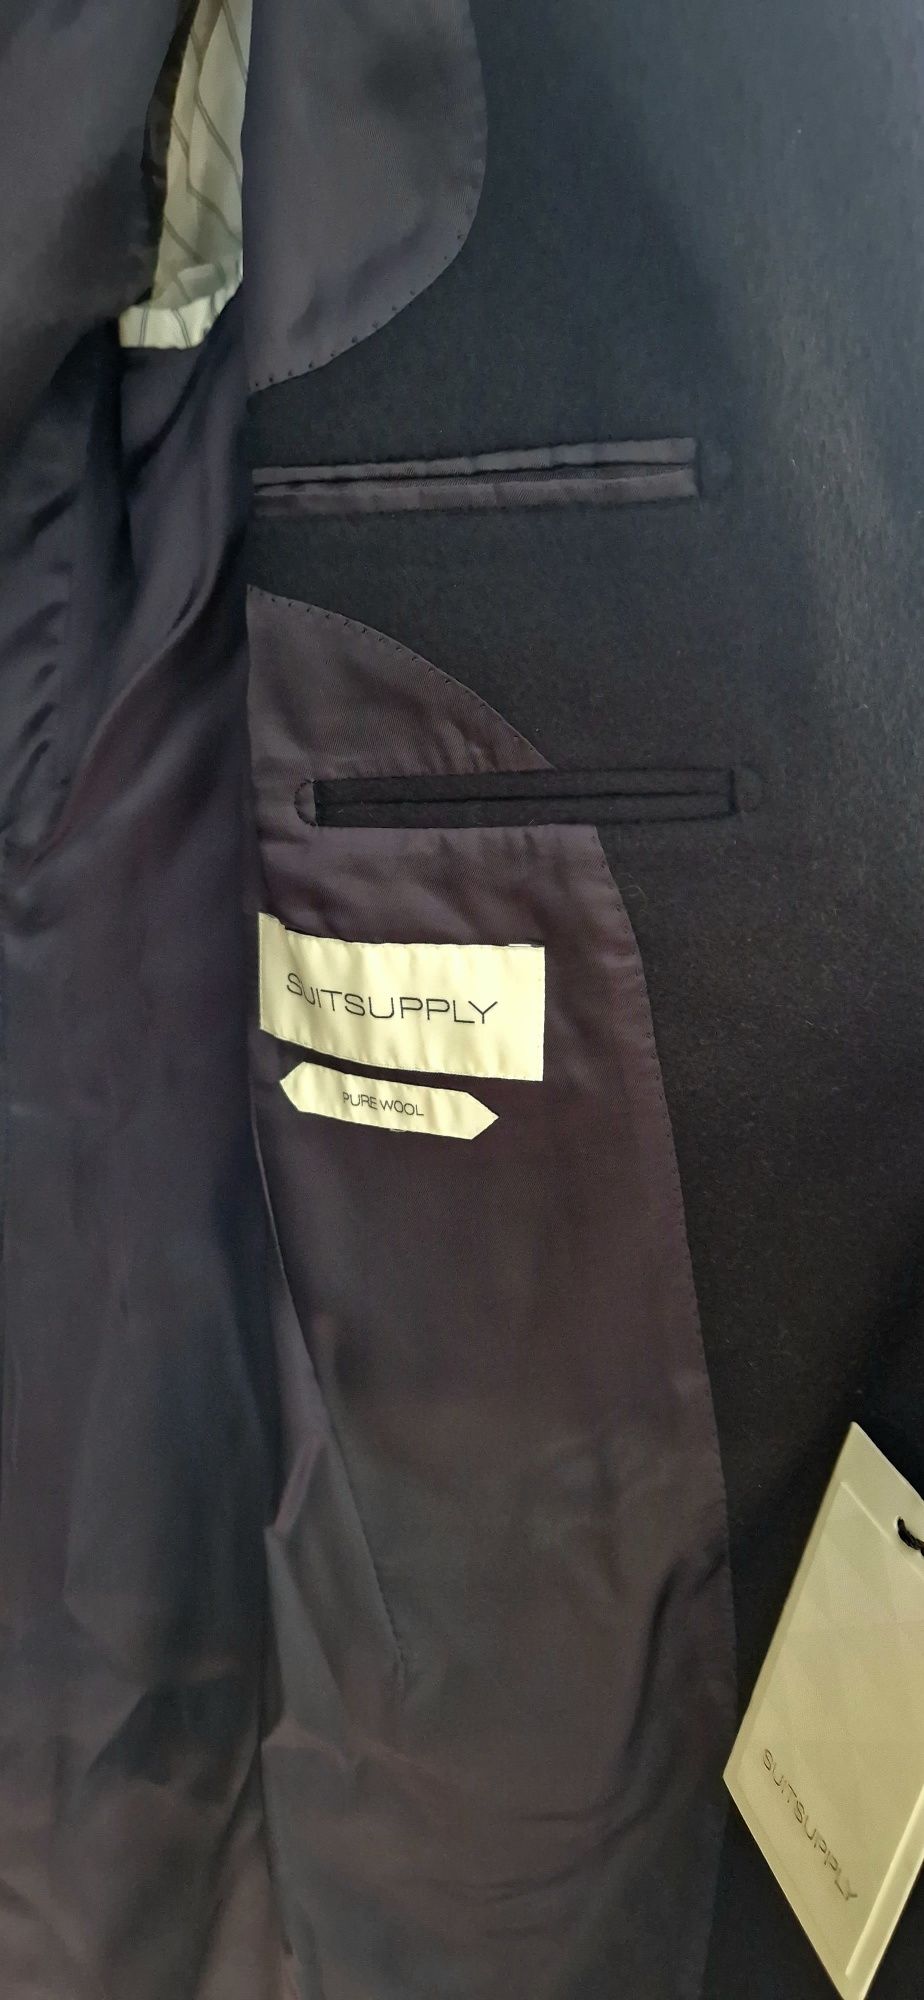 Nowy płaszcz Suitsupply r. 44